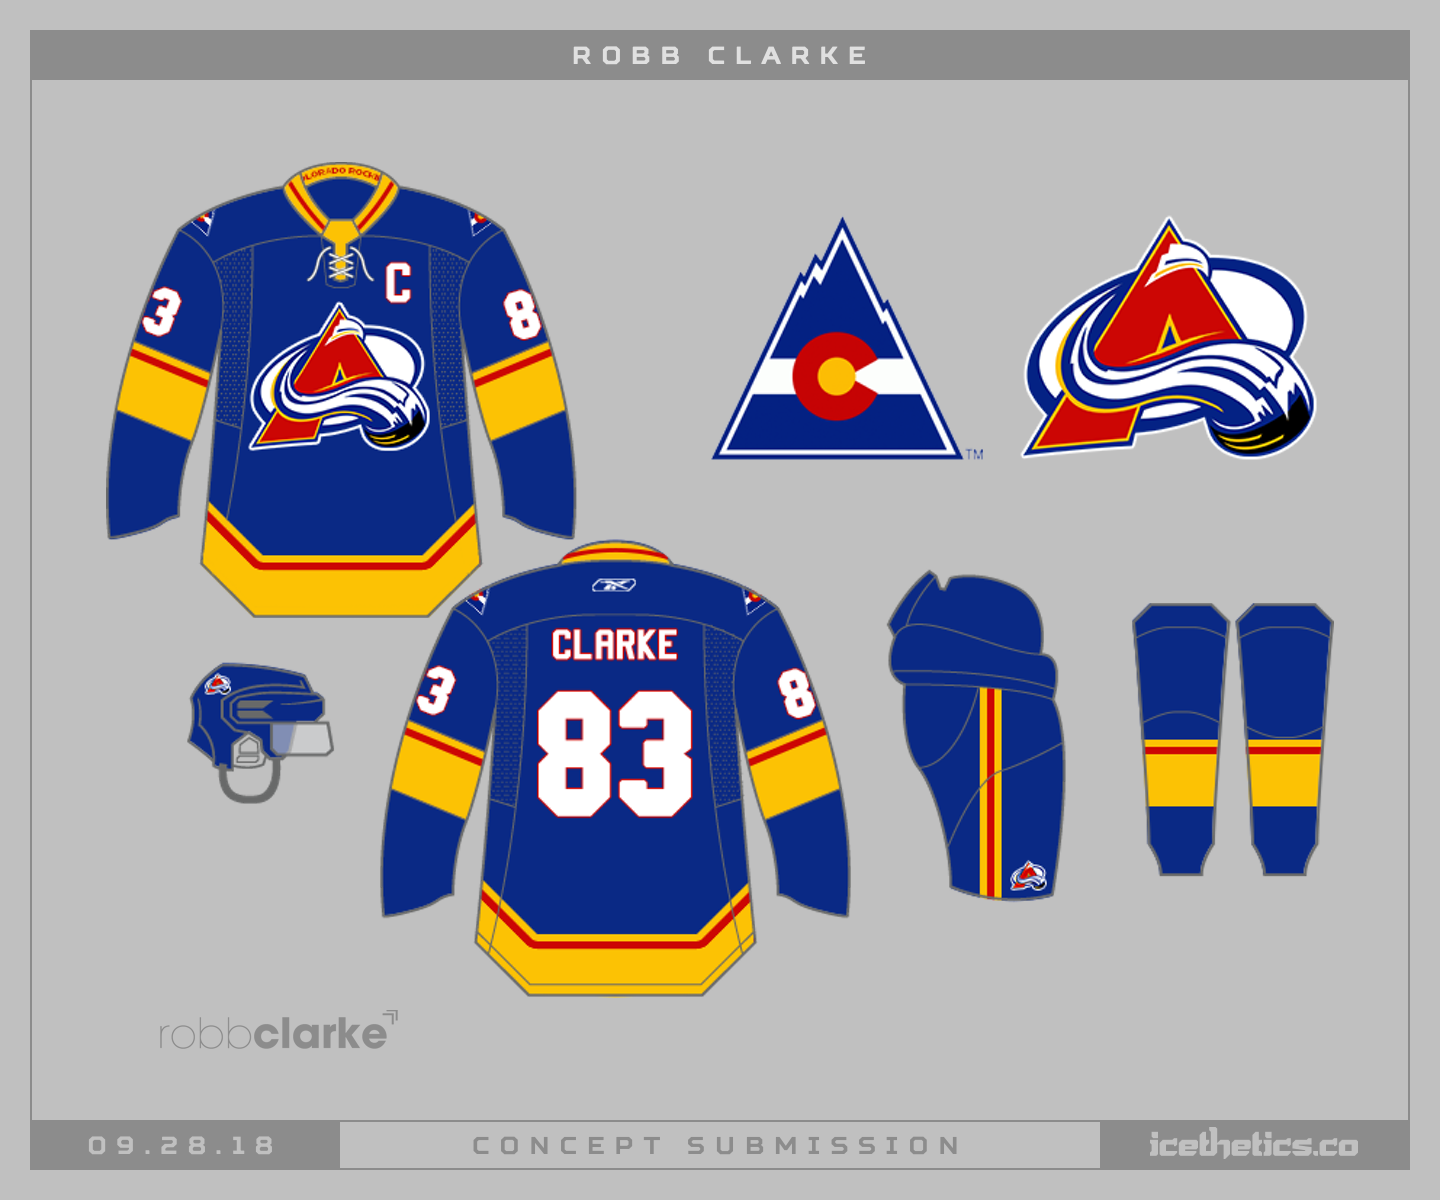 colorado rockies hockey gear